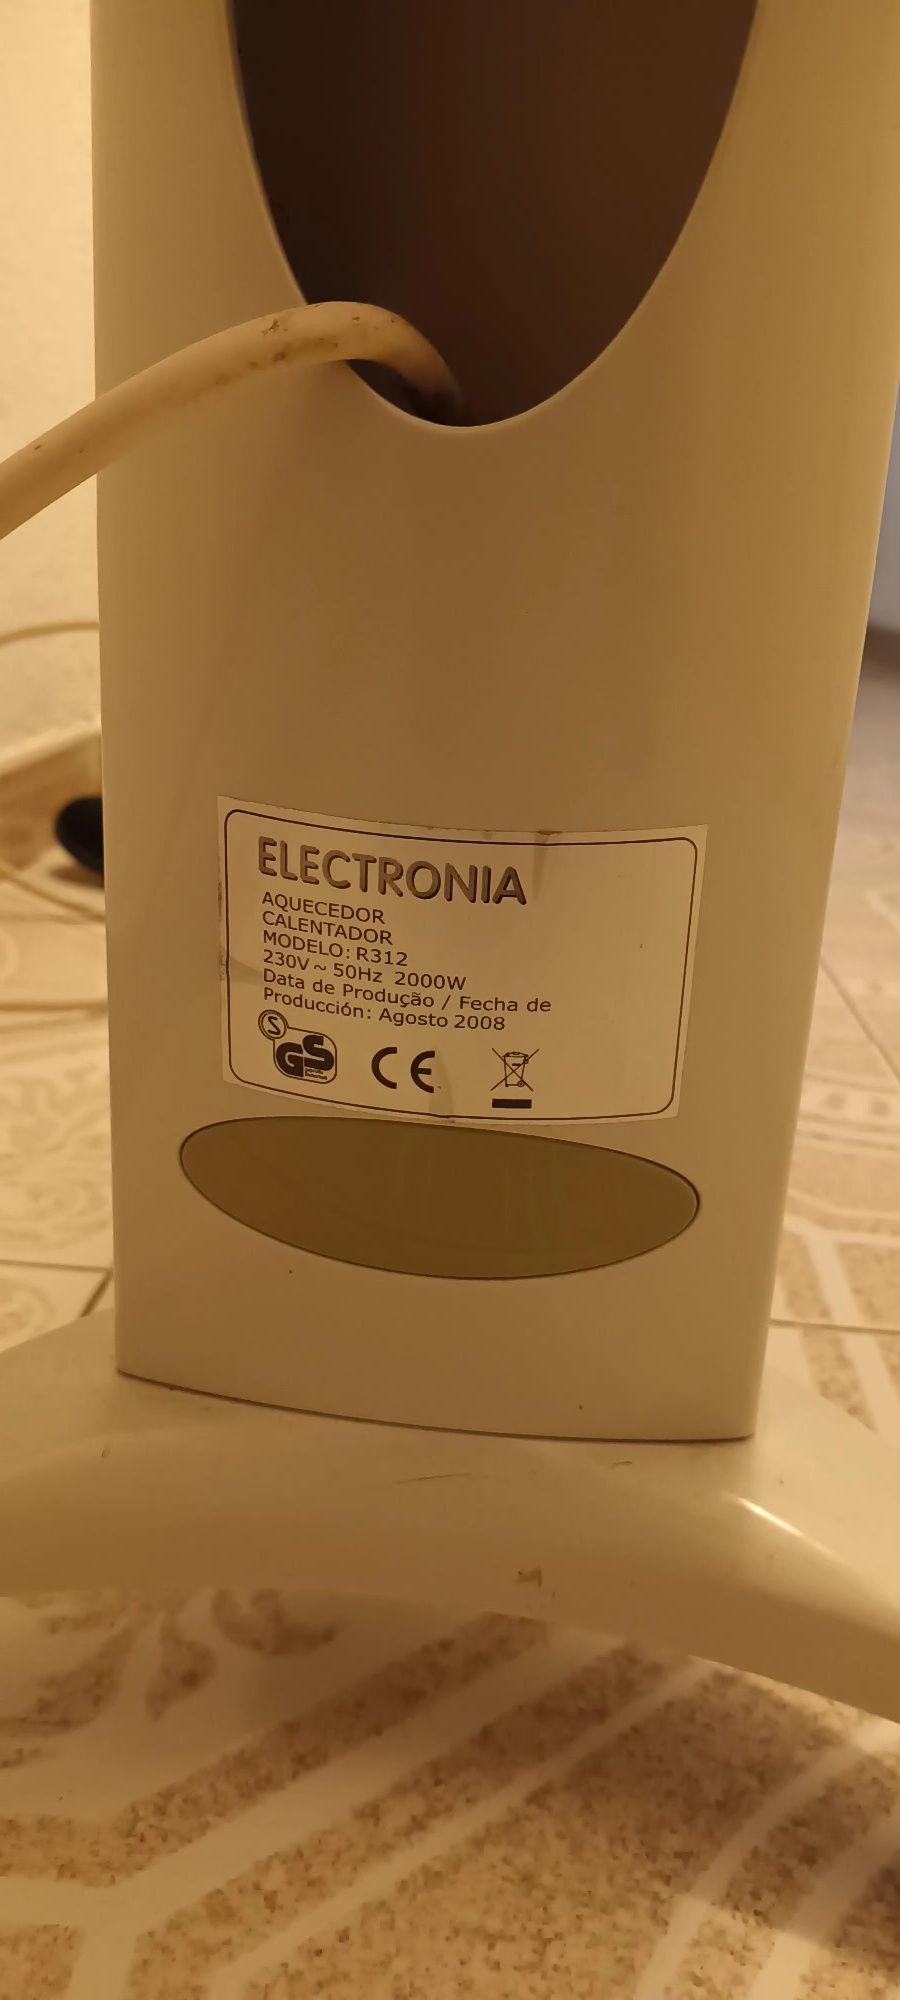 Aquecedor electronia R312